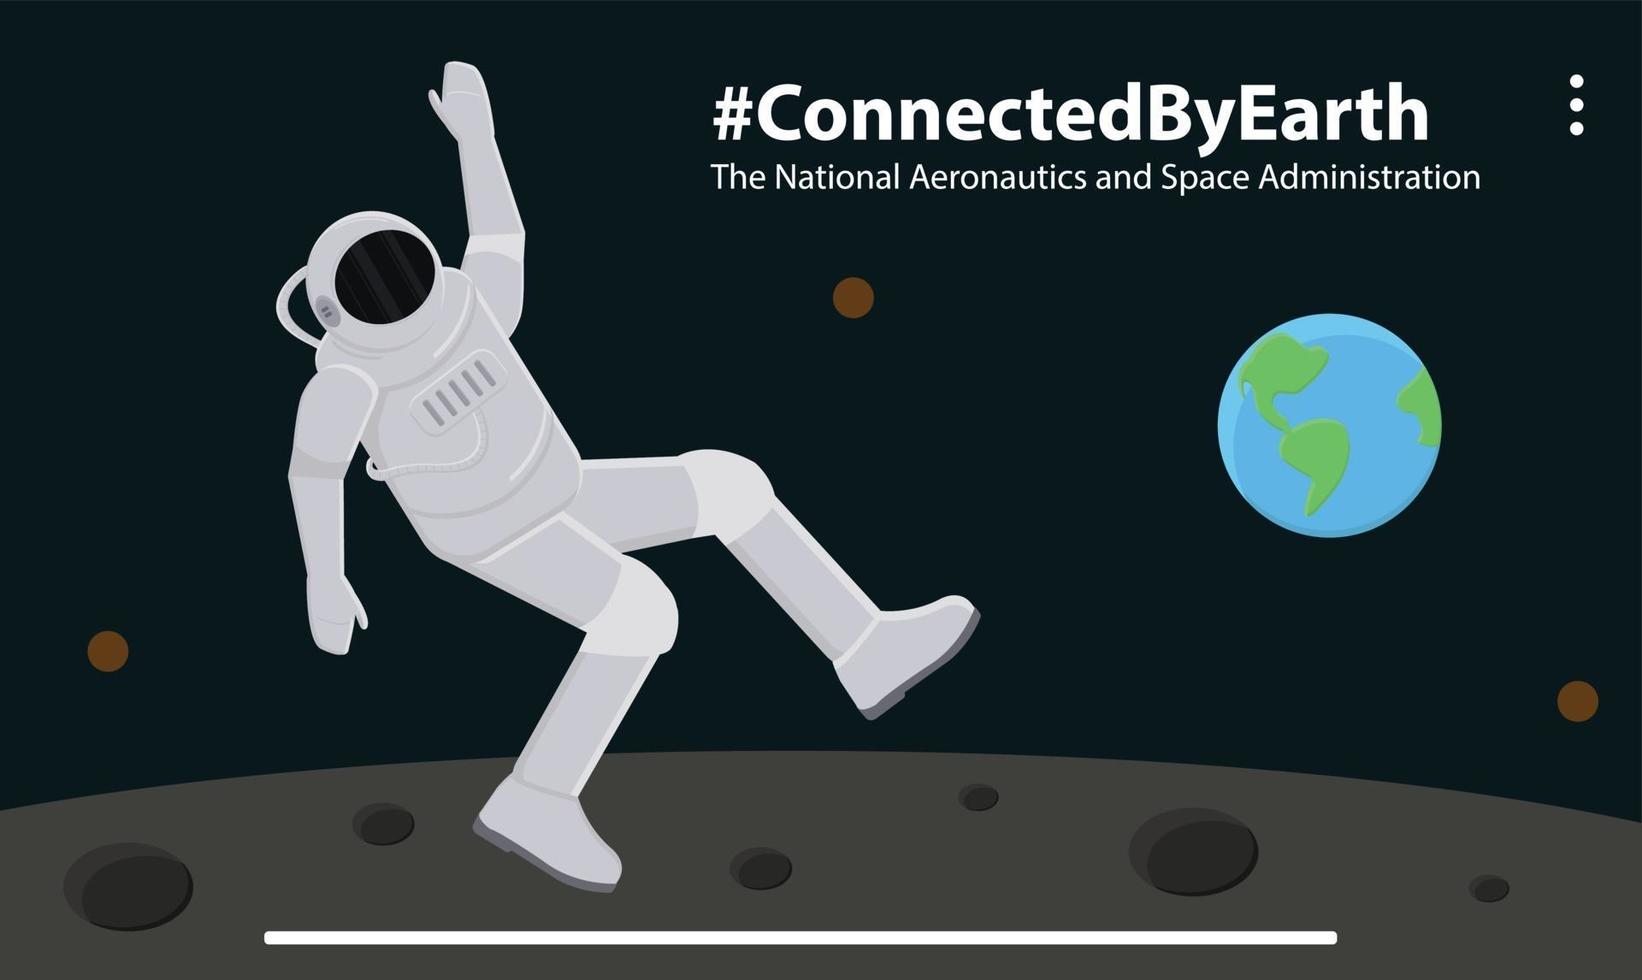 melkweg astronaut aarde maan alien spelen modern illustratie karakter vector